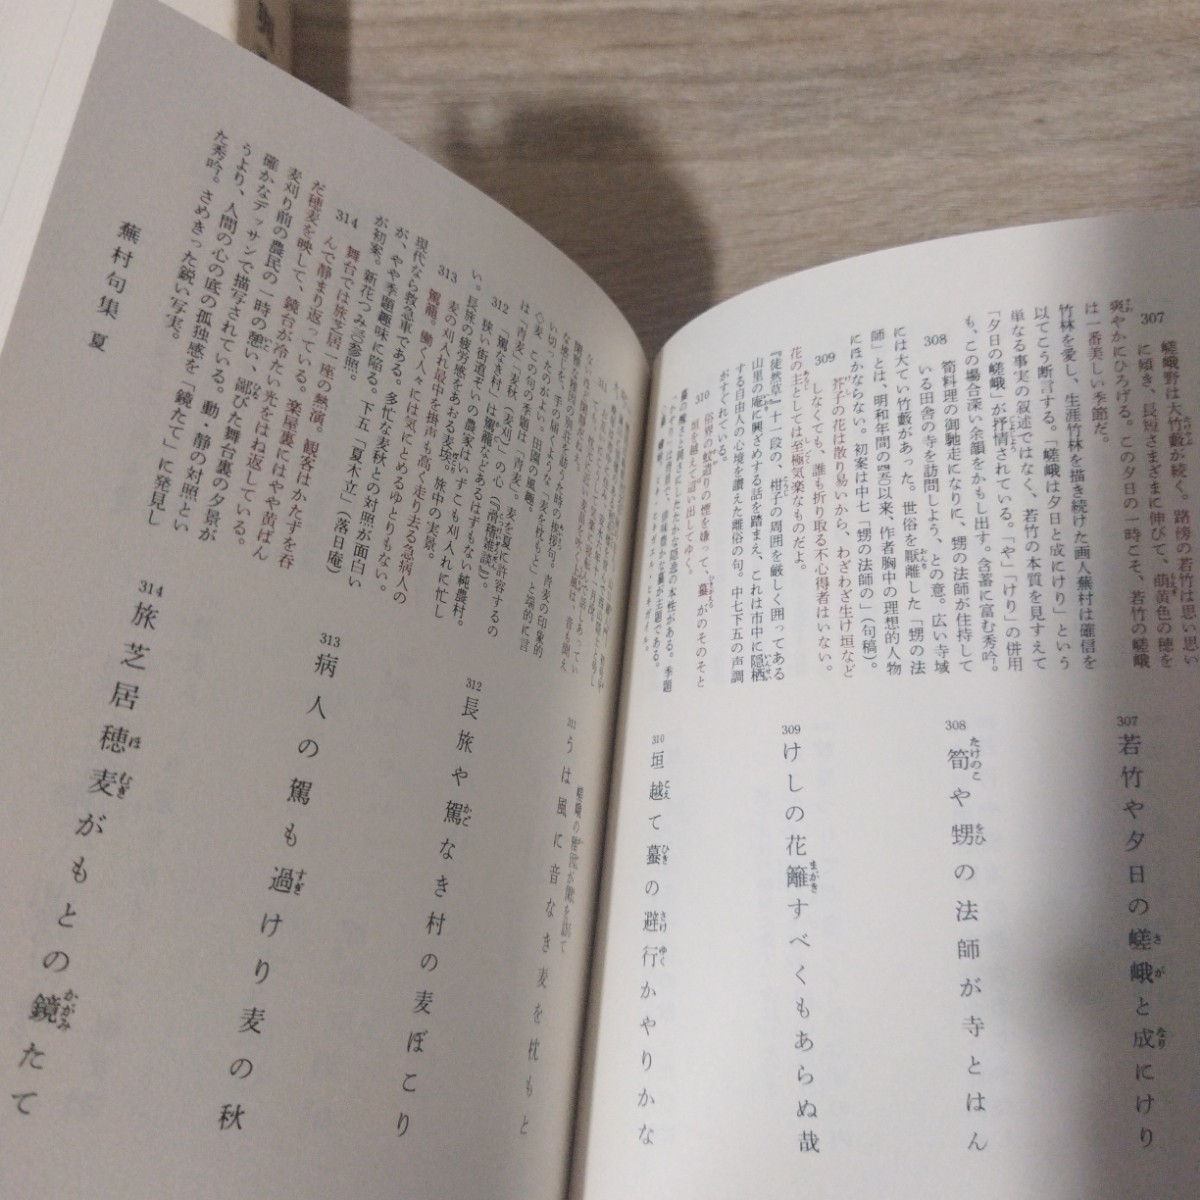 徒然草 新潮日本古典集成 木藤才蔵 校註 第十回配本